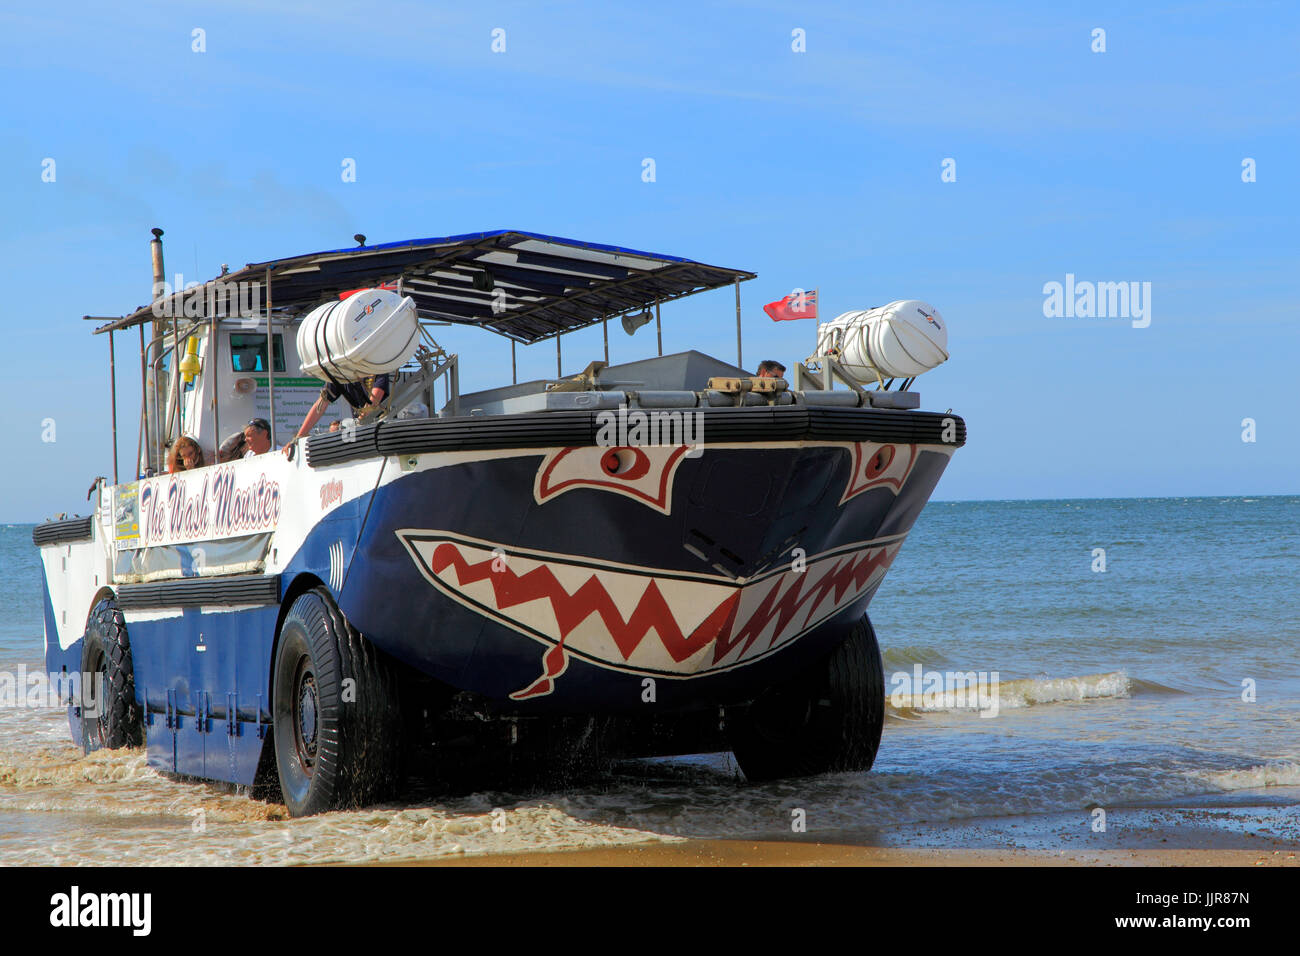 Le wash Monster, plaisir, mer, croisières, excursions, cruiser, véhicule amphibie, plage de Hunstanton, Norfolk, England, UK Banque D'Images